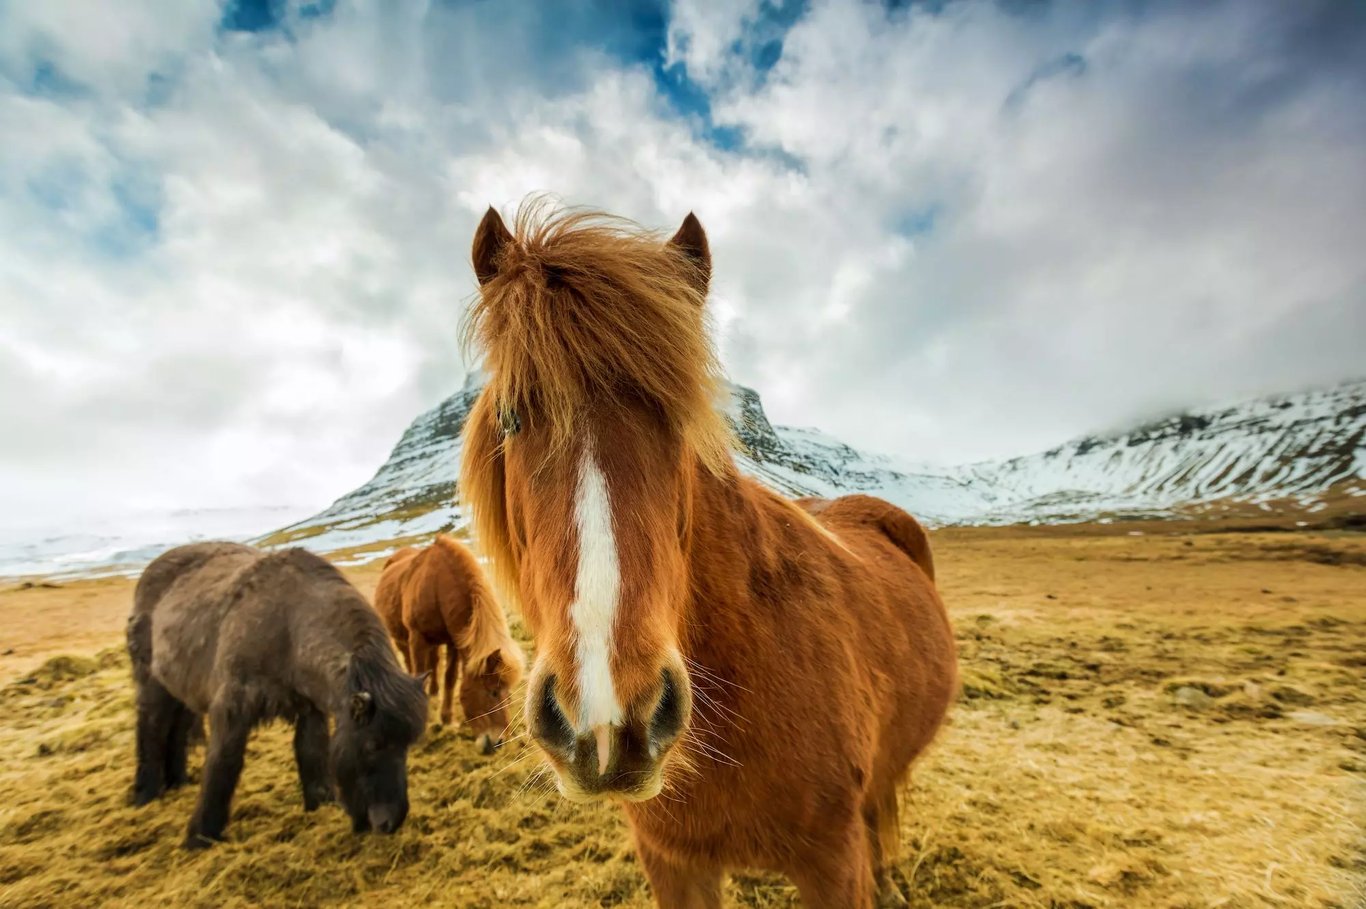 Izland - Top 9 izlandi állat, amit nem hagyhatsz ki!